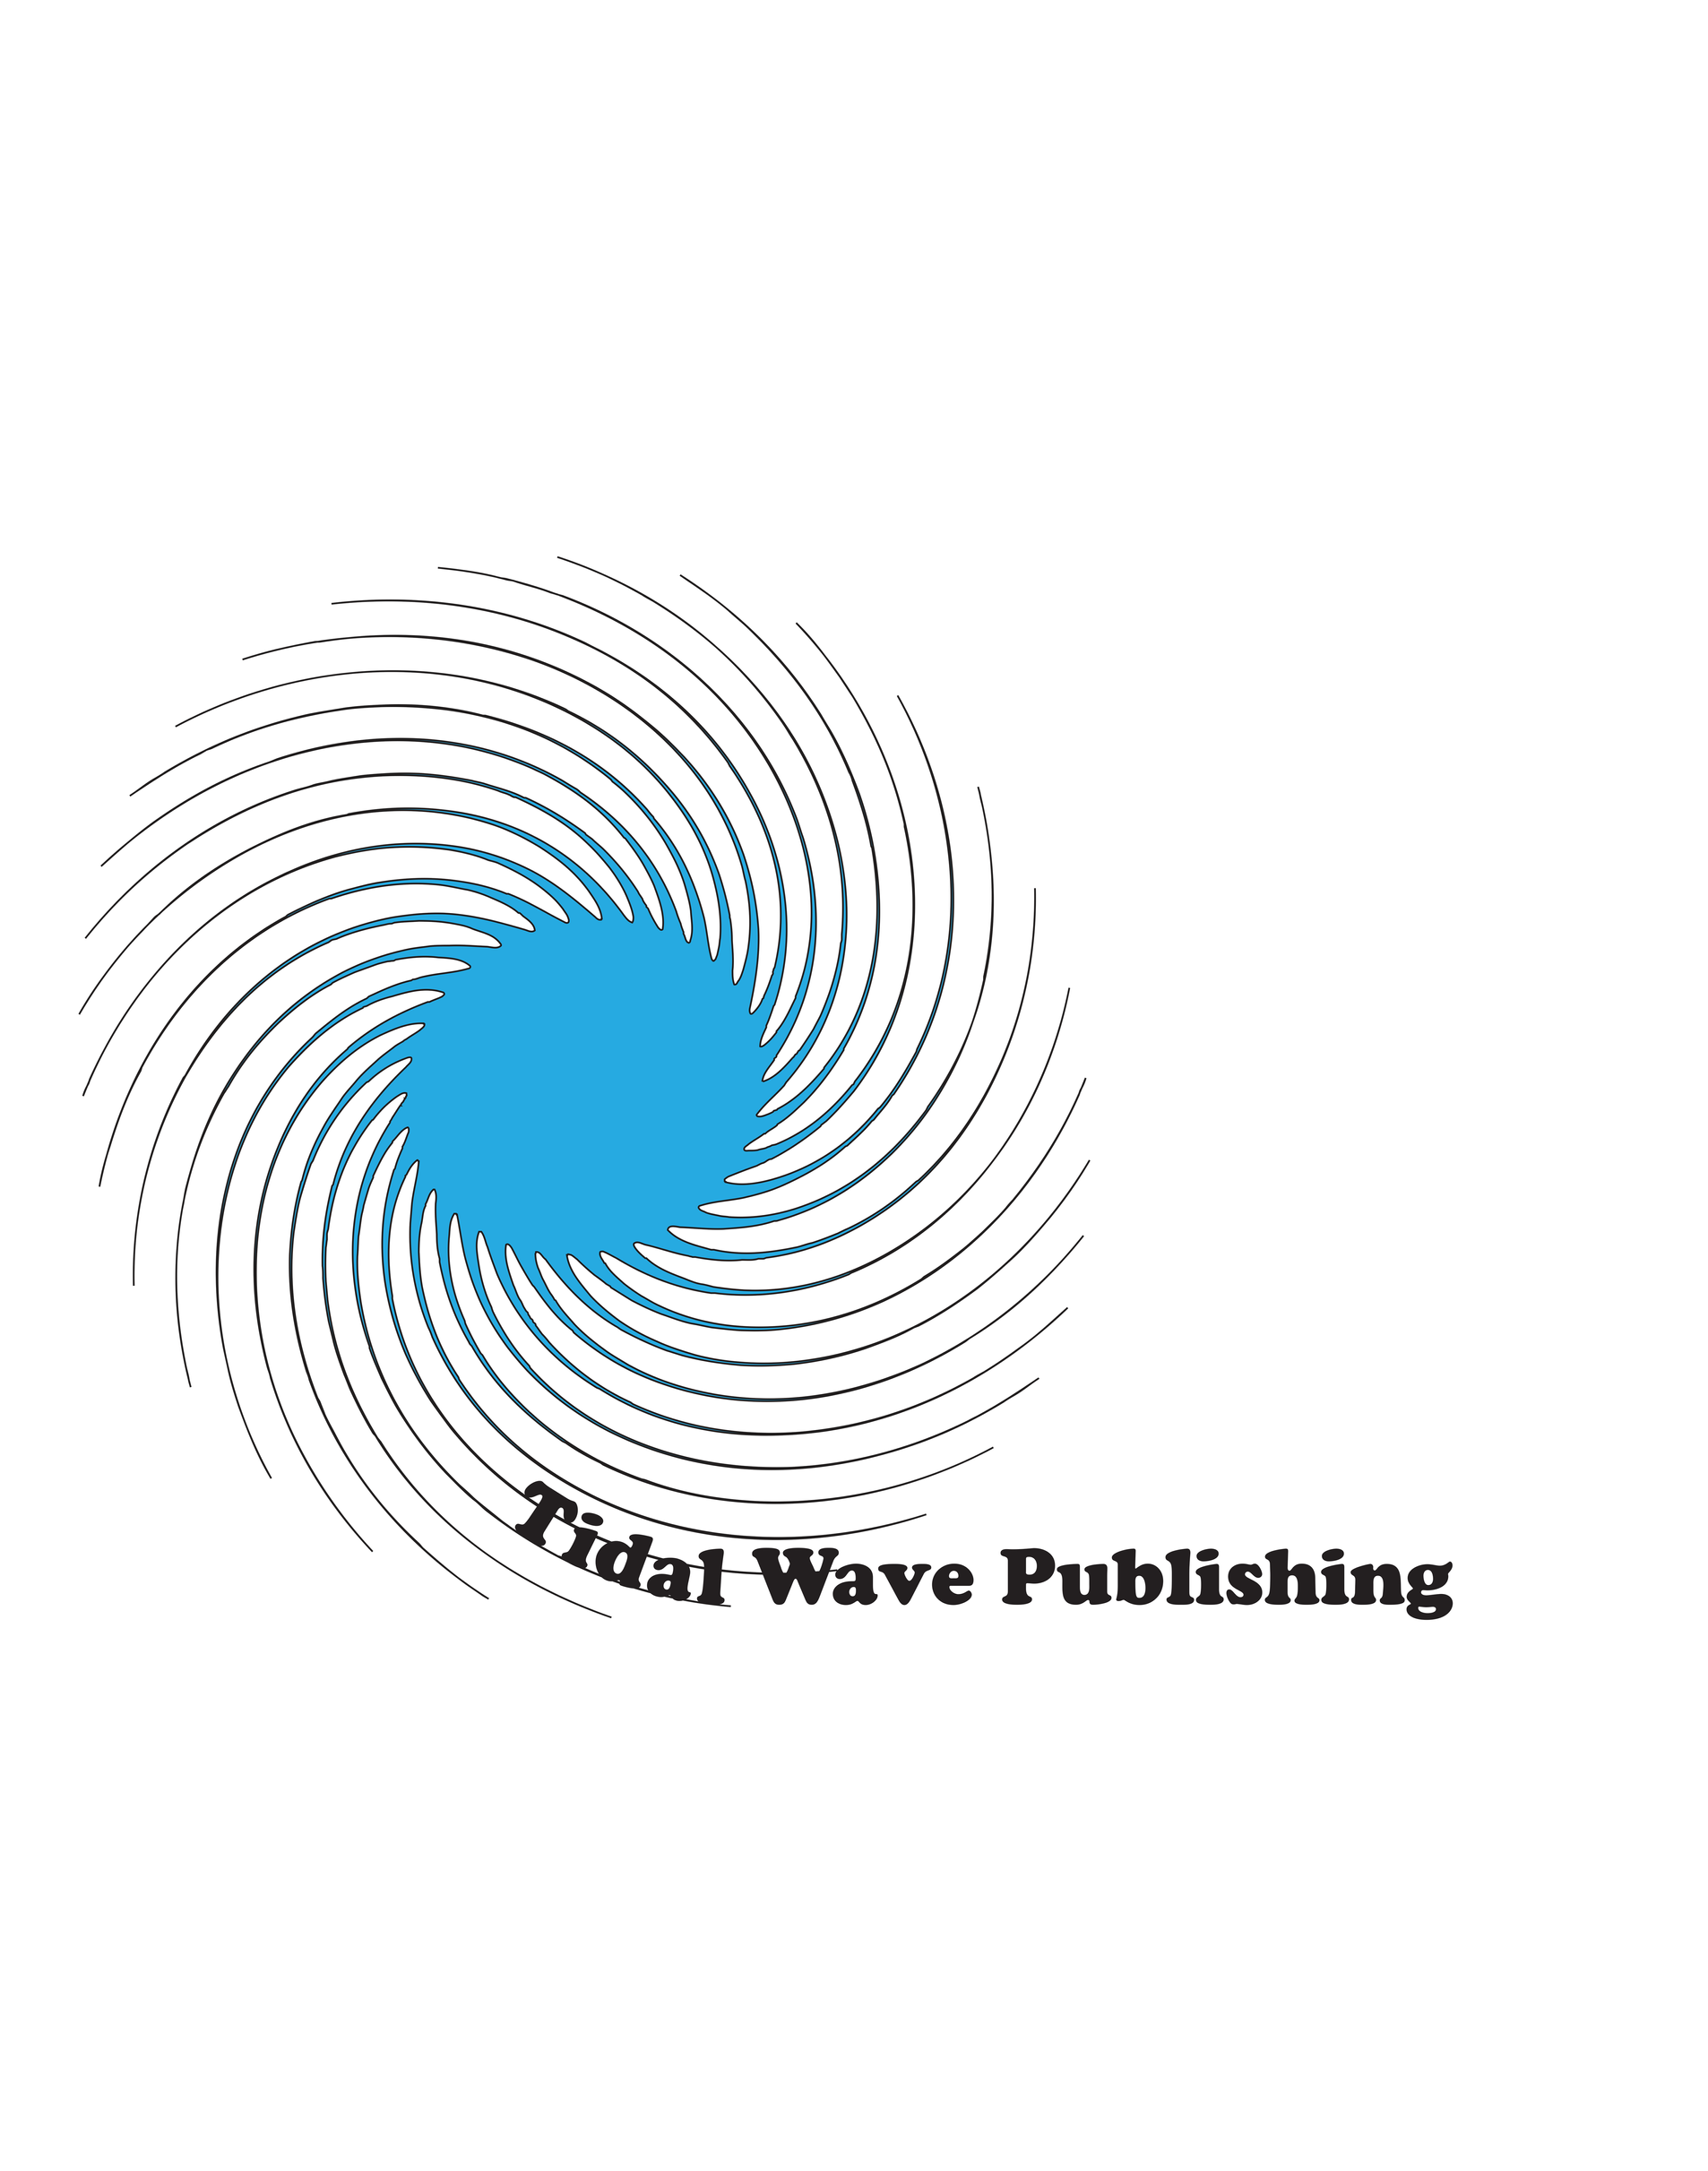 Tidal Wave Publishing Graphic Art Logo Image